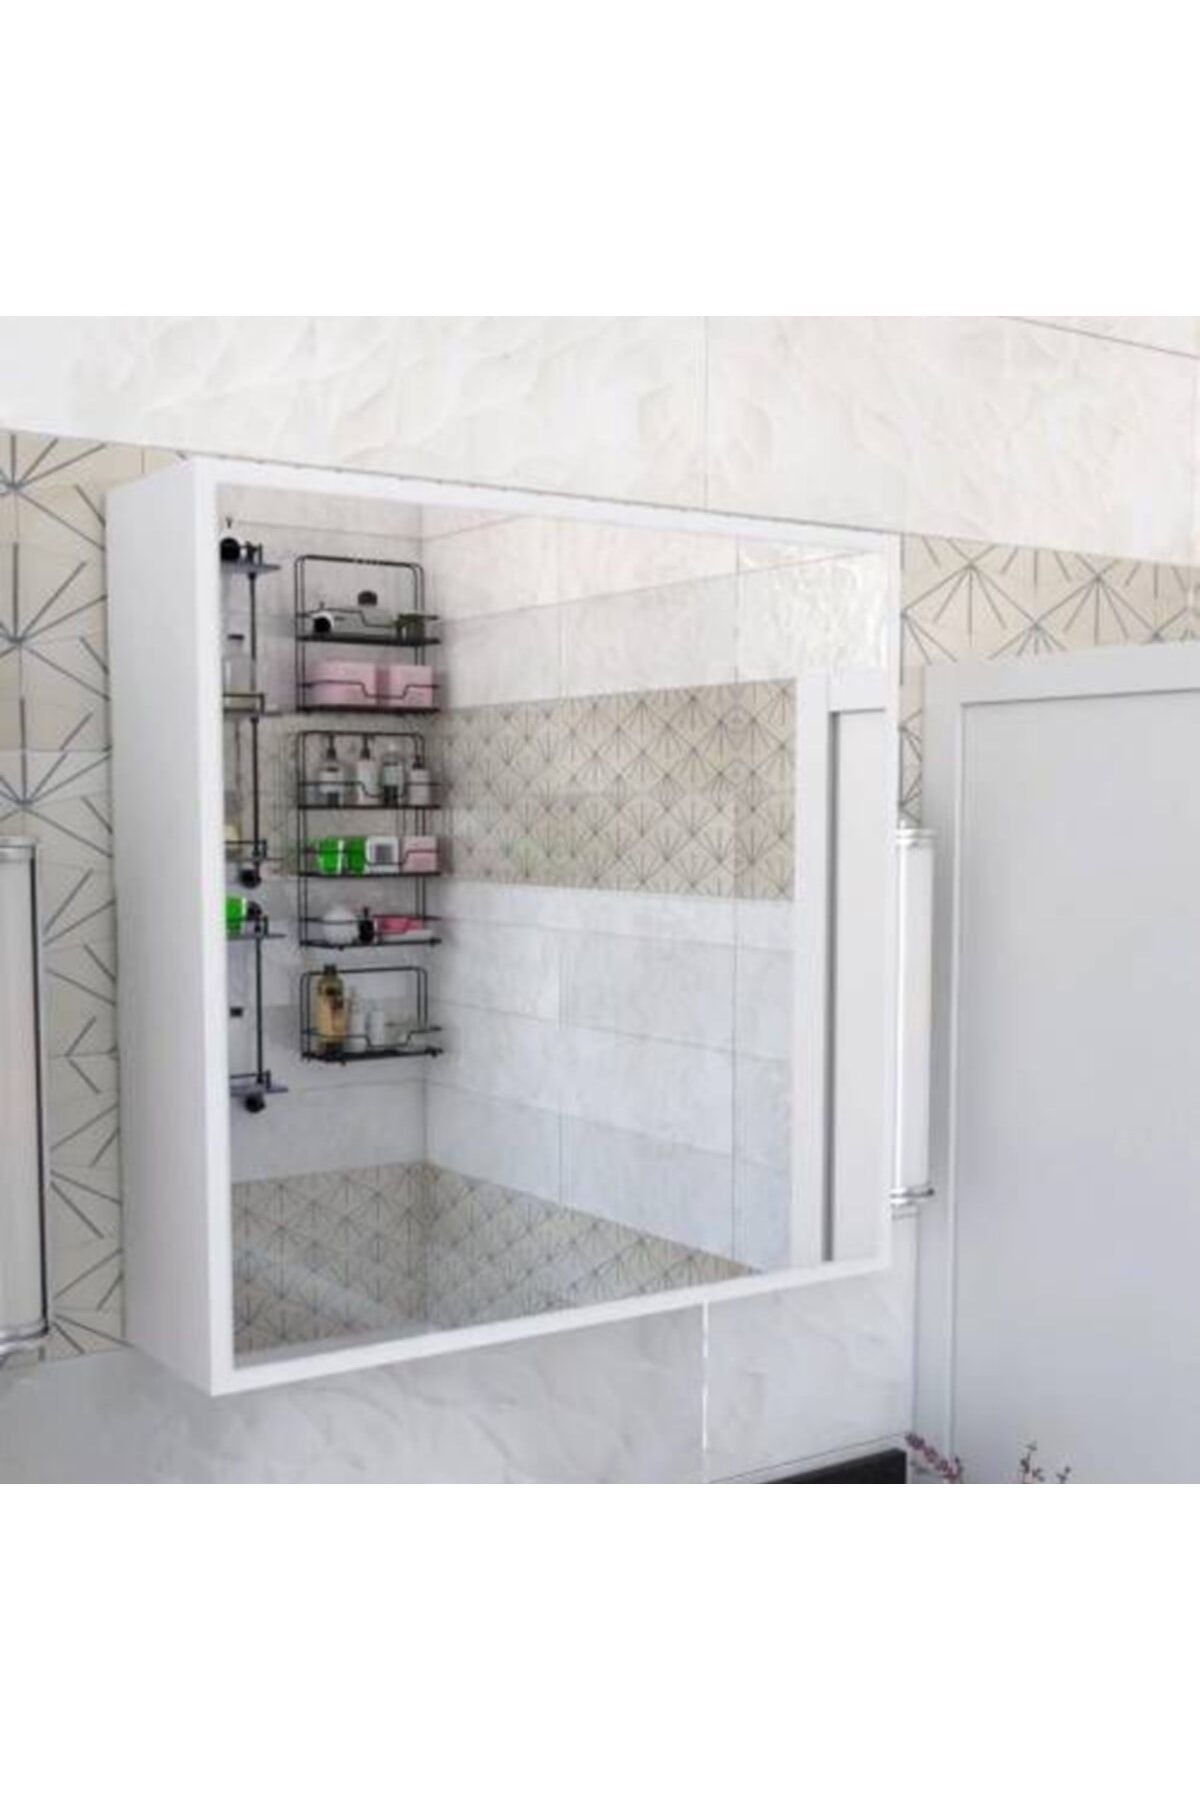 Bygolden Aynalı Banyo Dolabı 2 Kapaklı Asma Dolap Banyo Havlu Dolabı Aynalı Dolap Banyo Rafı